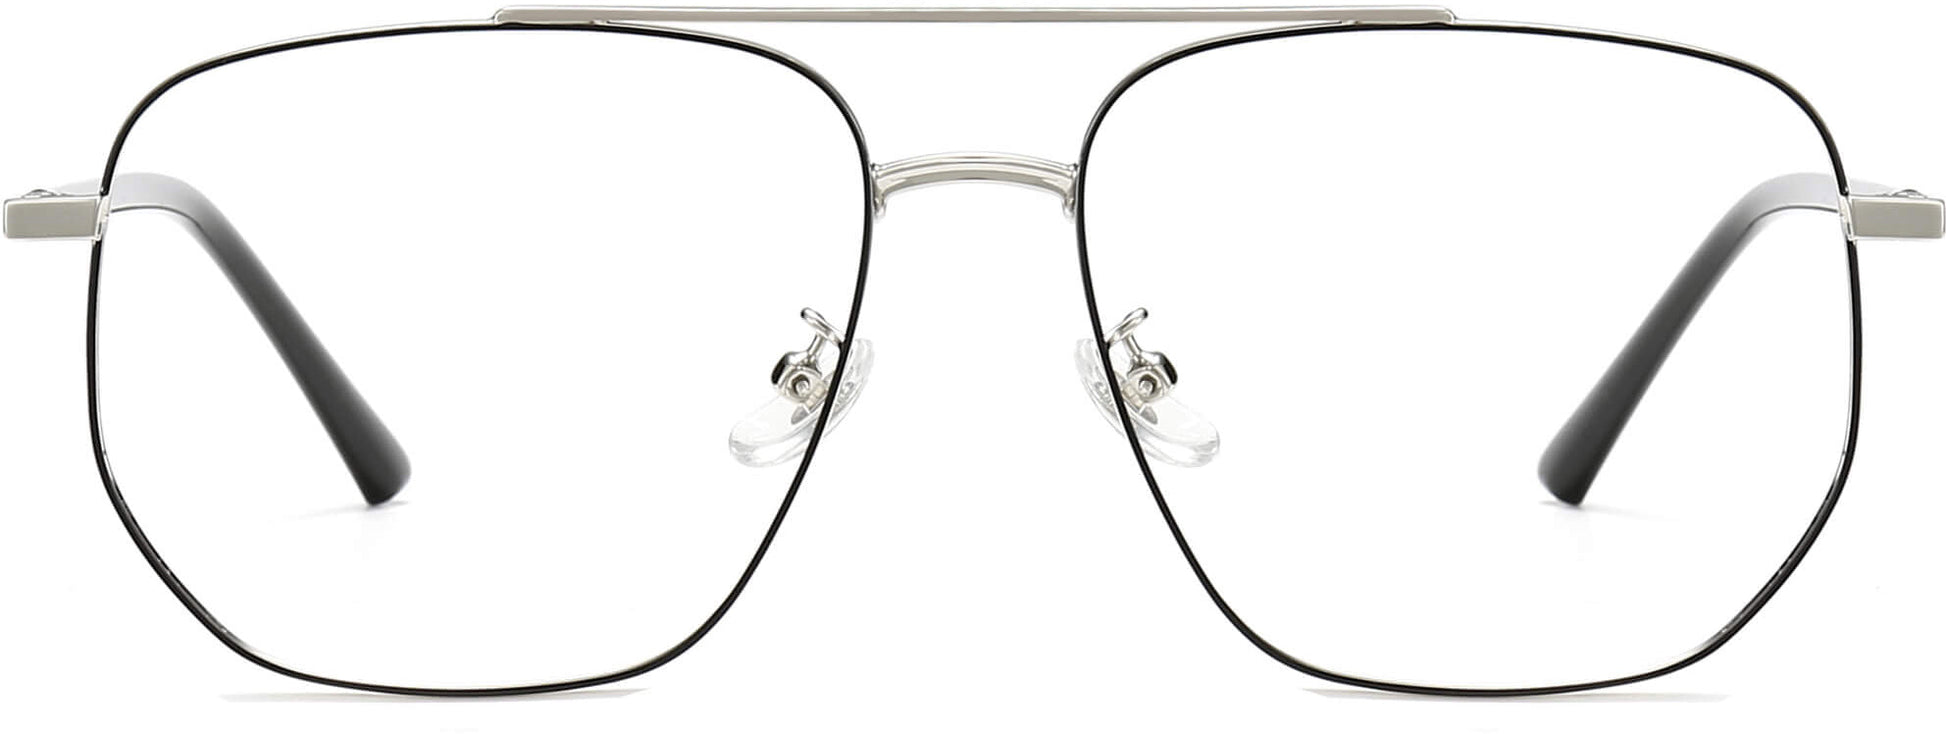 Nikolas Geometric Black Eyeglasses from ANRRI, front view